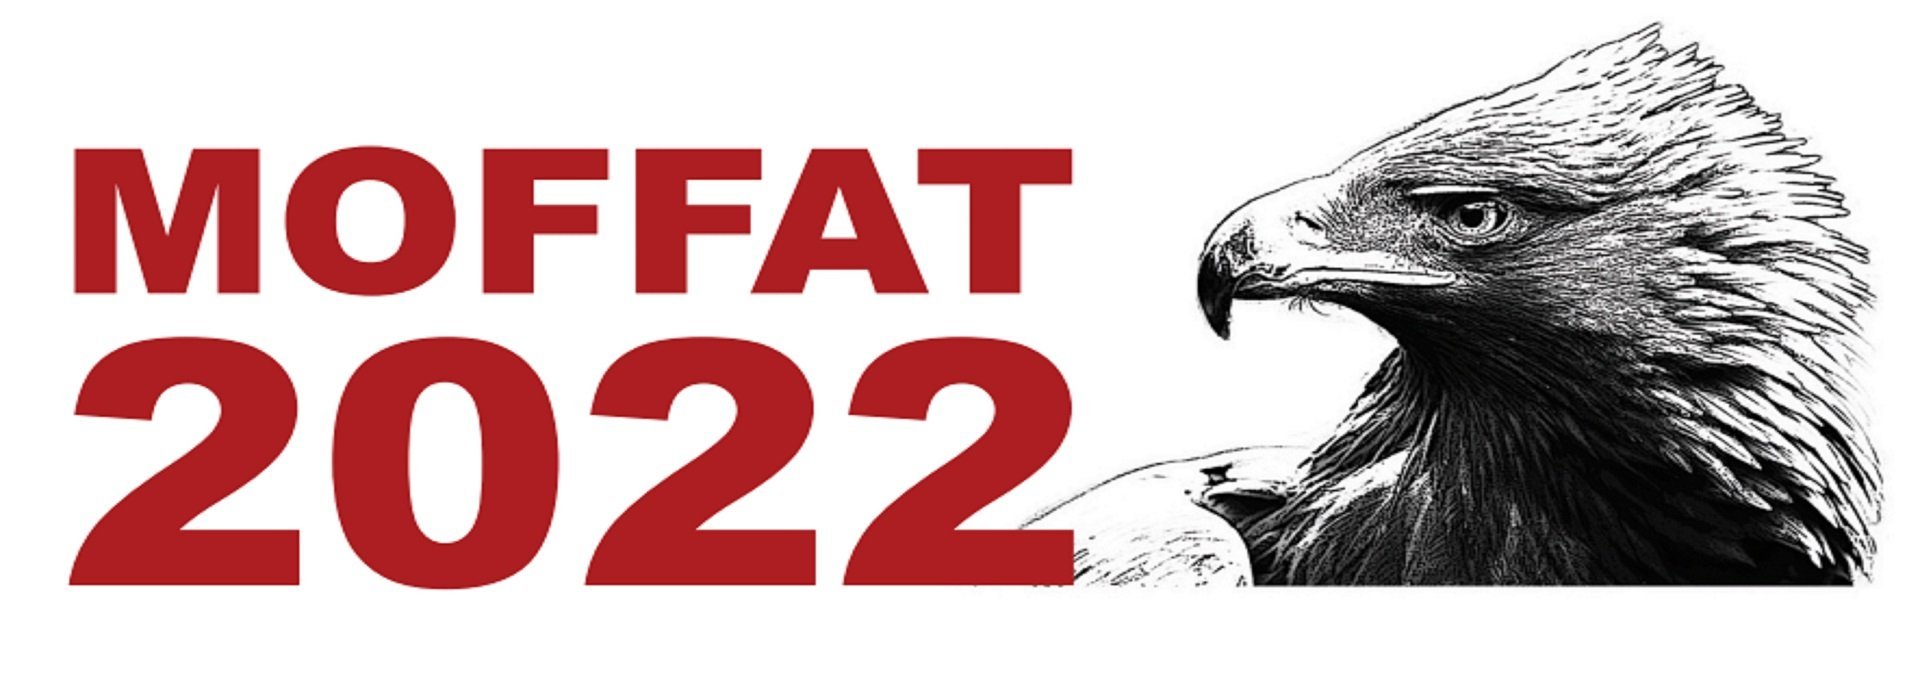 Moffat 2022 Logo